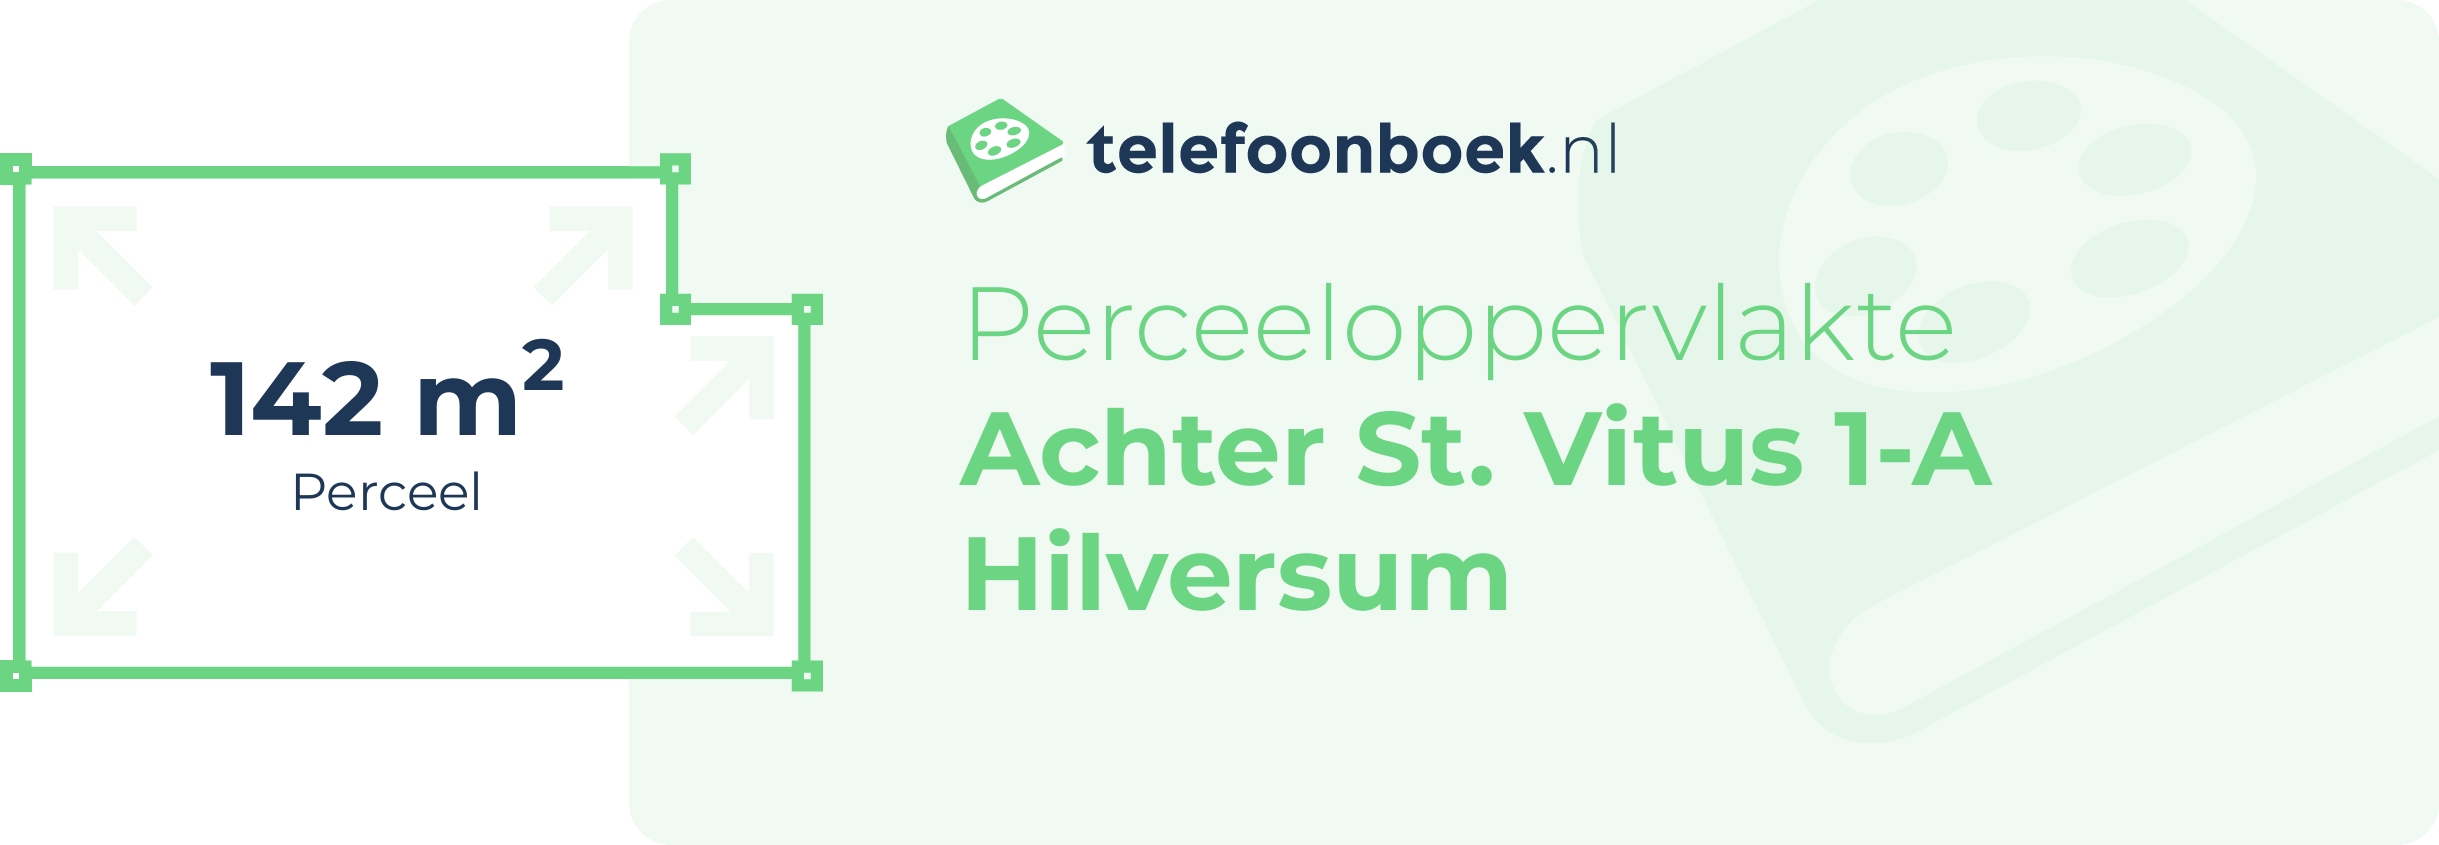 Perceeloppervlakte Achter St. Vitus 1-A Hilversum